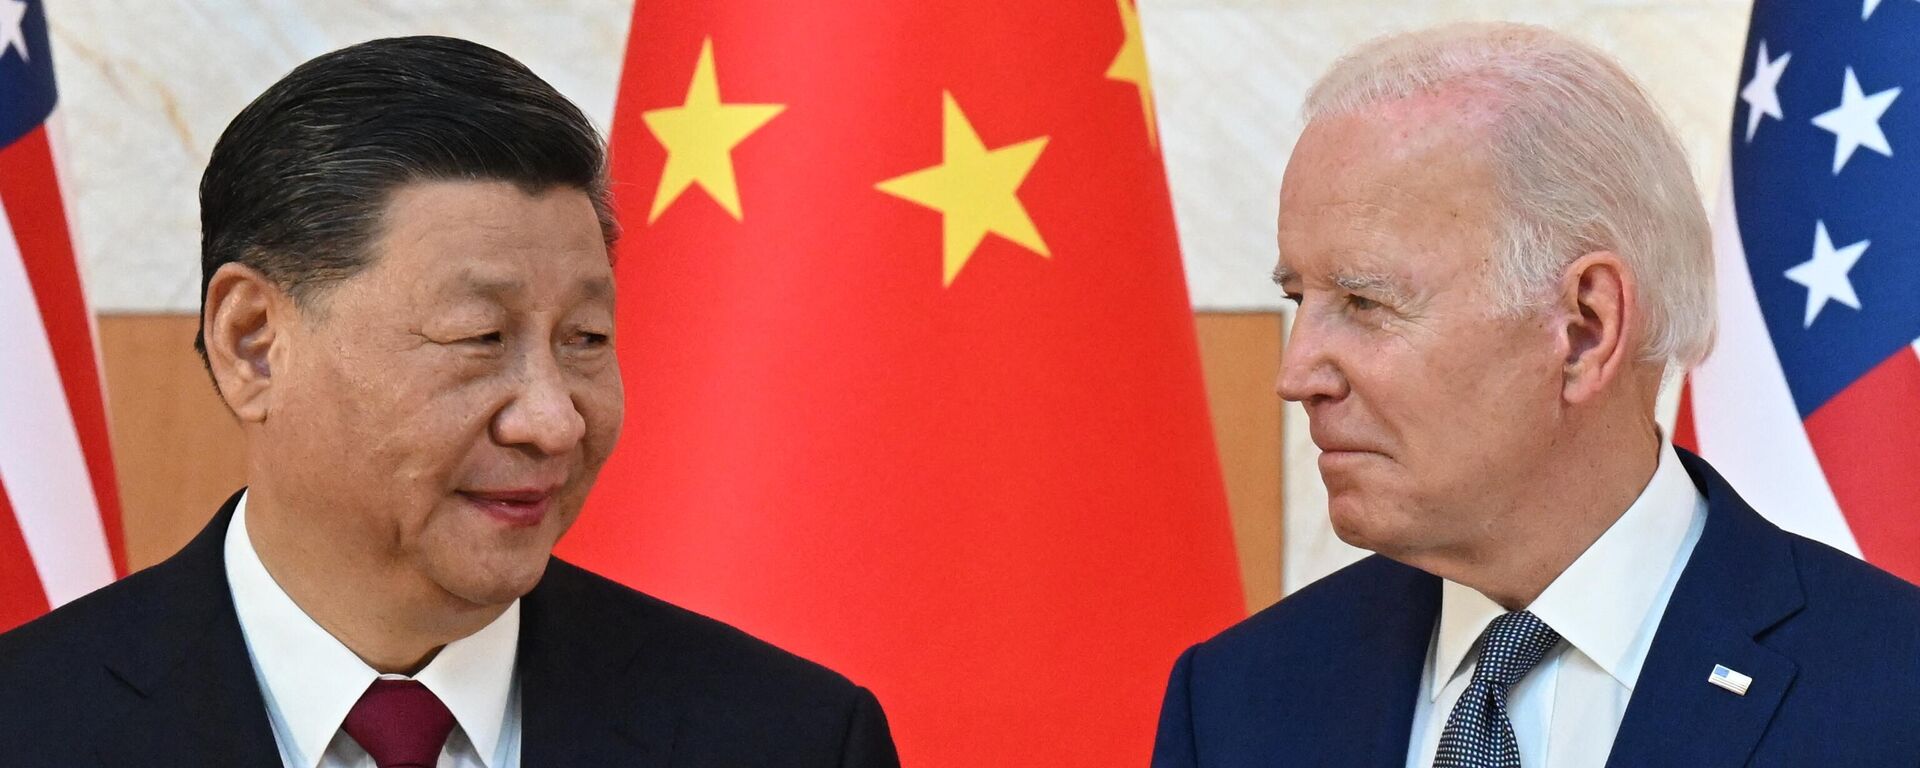 ABD Başkanı Joe Biden ile Çin Devlet Başkanı Şi Cinping arasındaki ilk yüz yüze görüşme, Endonezya'nın Bali Adası'nda düzenlenen G20 zirvesinde gerçekleşti. - Sputnik Türkiye, 1920, 11.08.2023